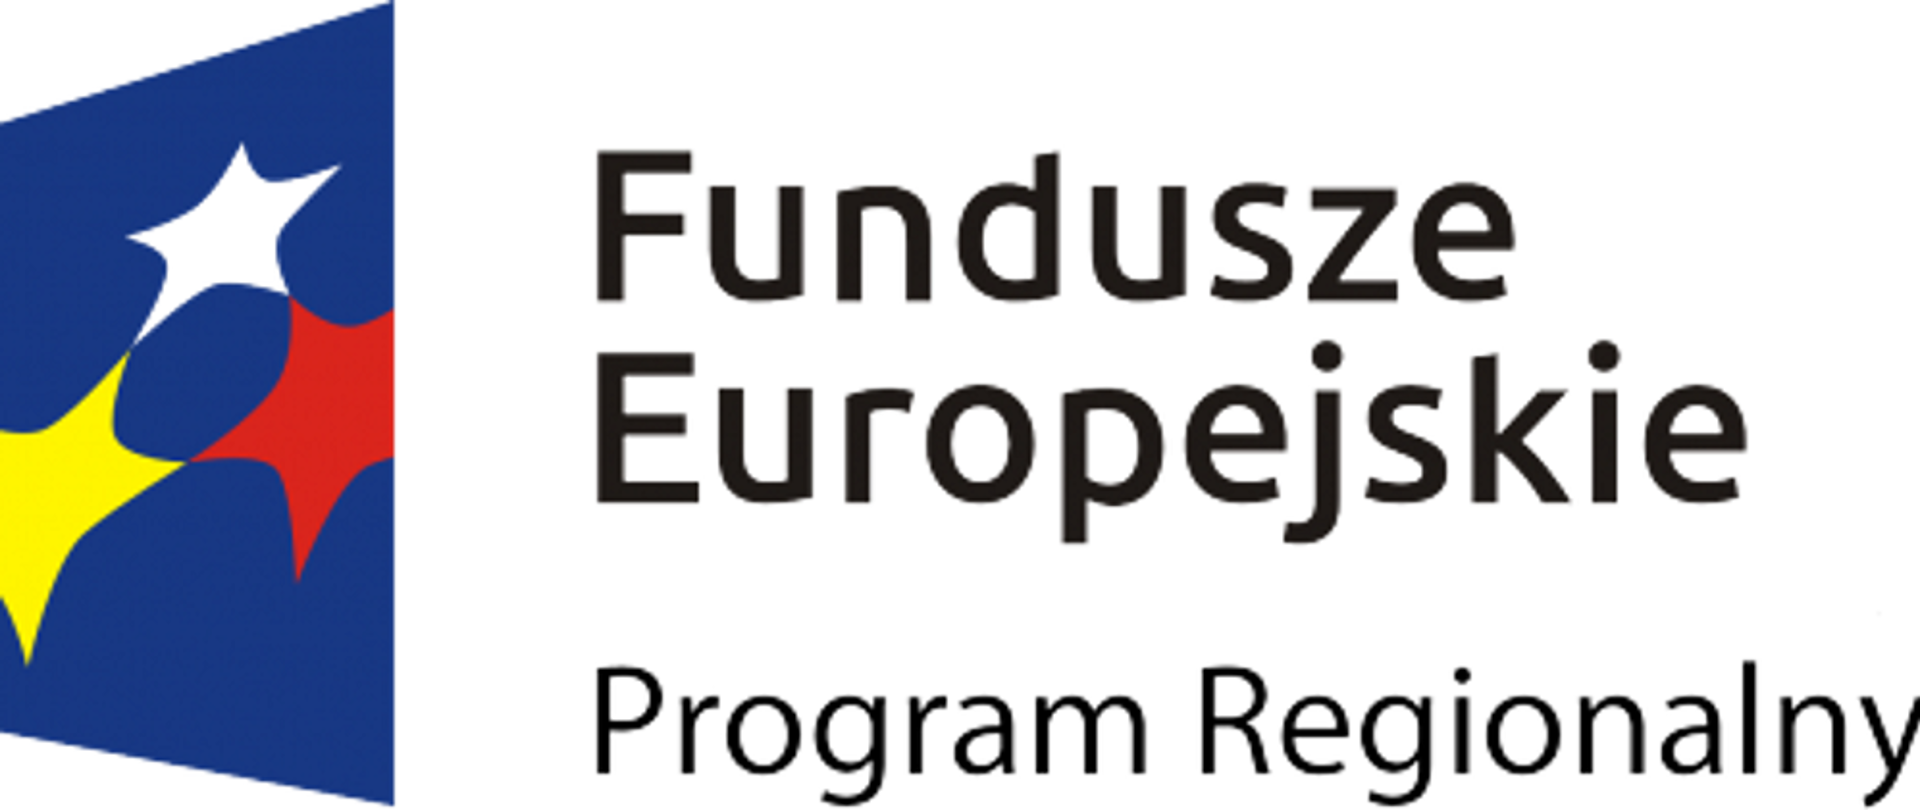 Trzy kolorowe gwiazdy na ciemnoniebieskim tle, czarny napis Fundusze Europejskie Program Regionalny na białym tle